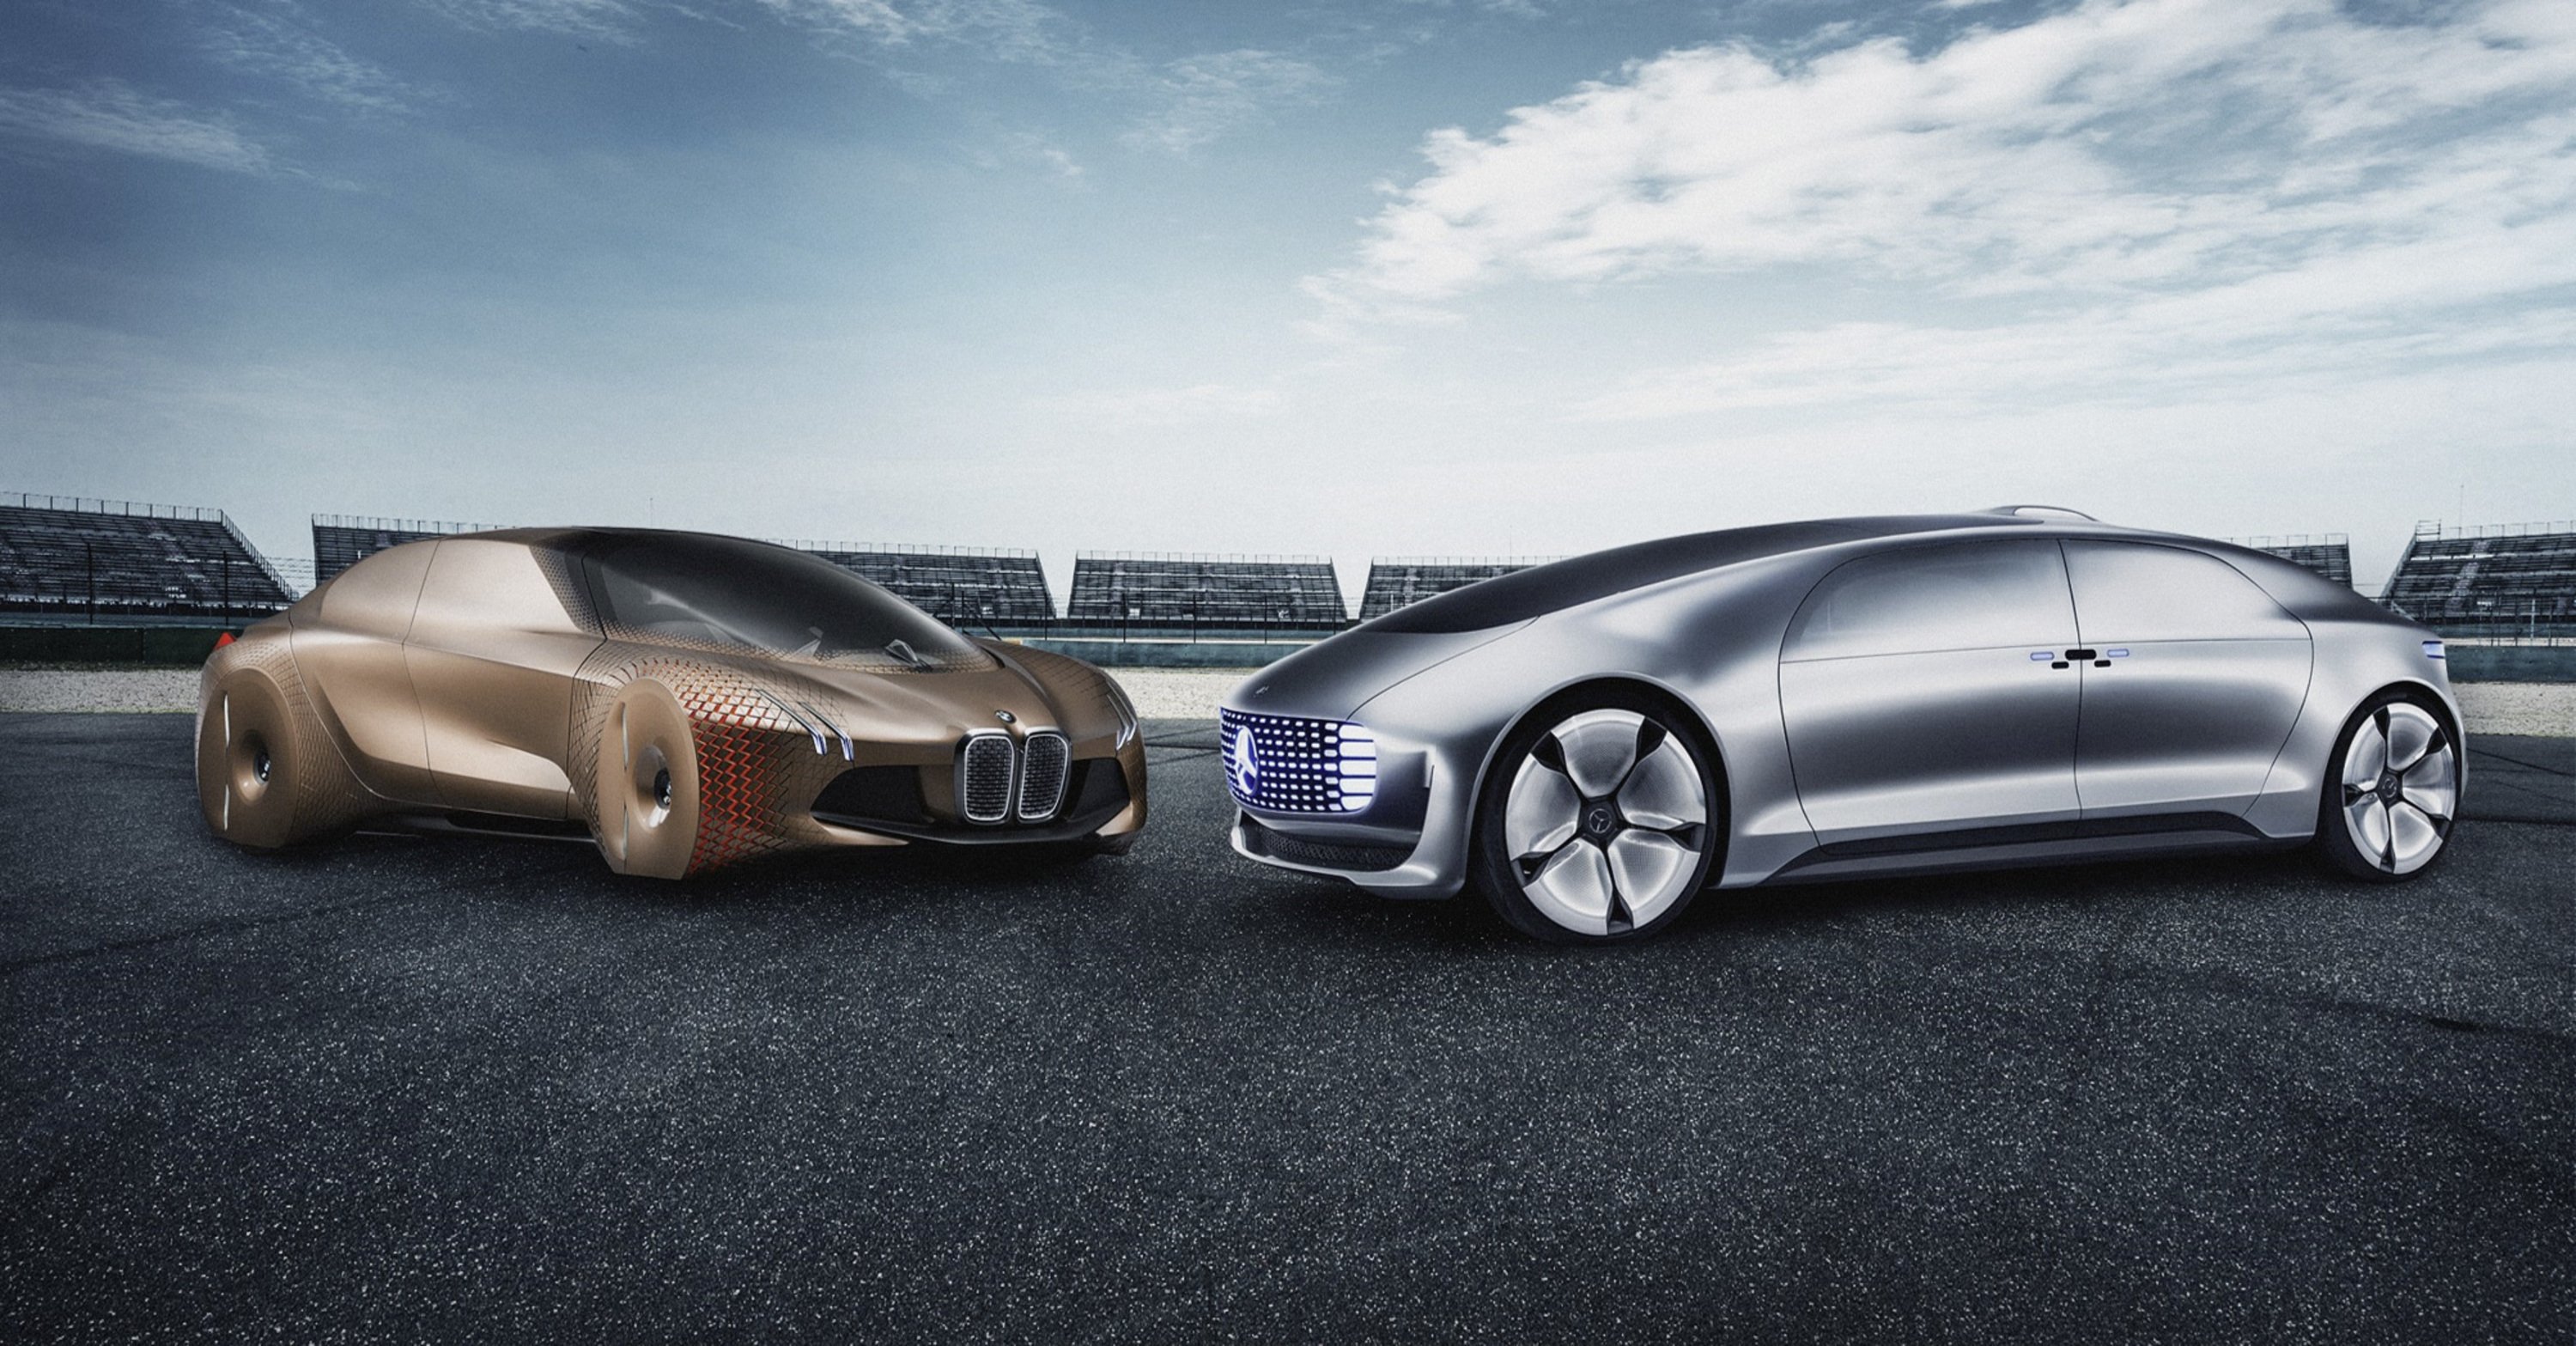 BMW e Mercedes, arriva la conferma: insieme per la guida autonoma